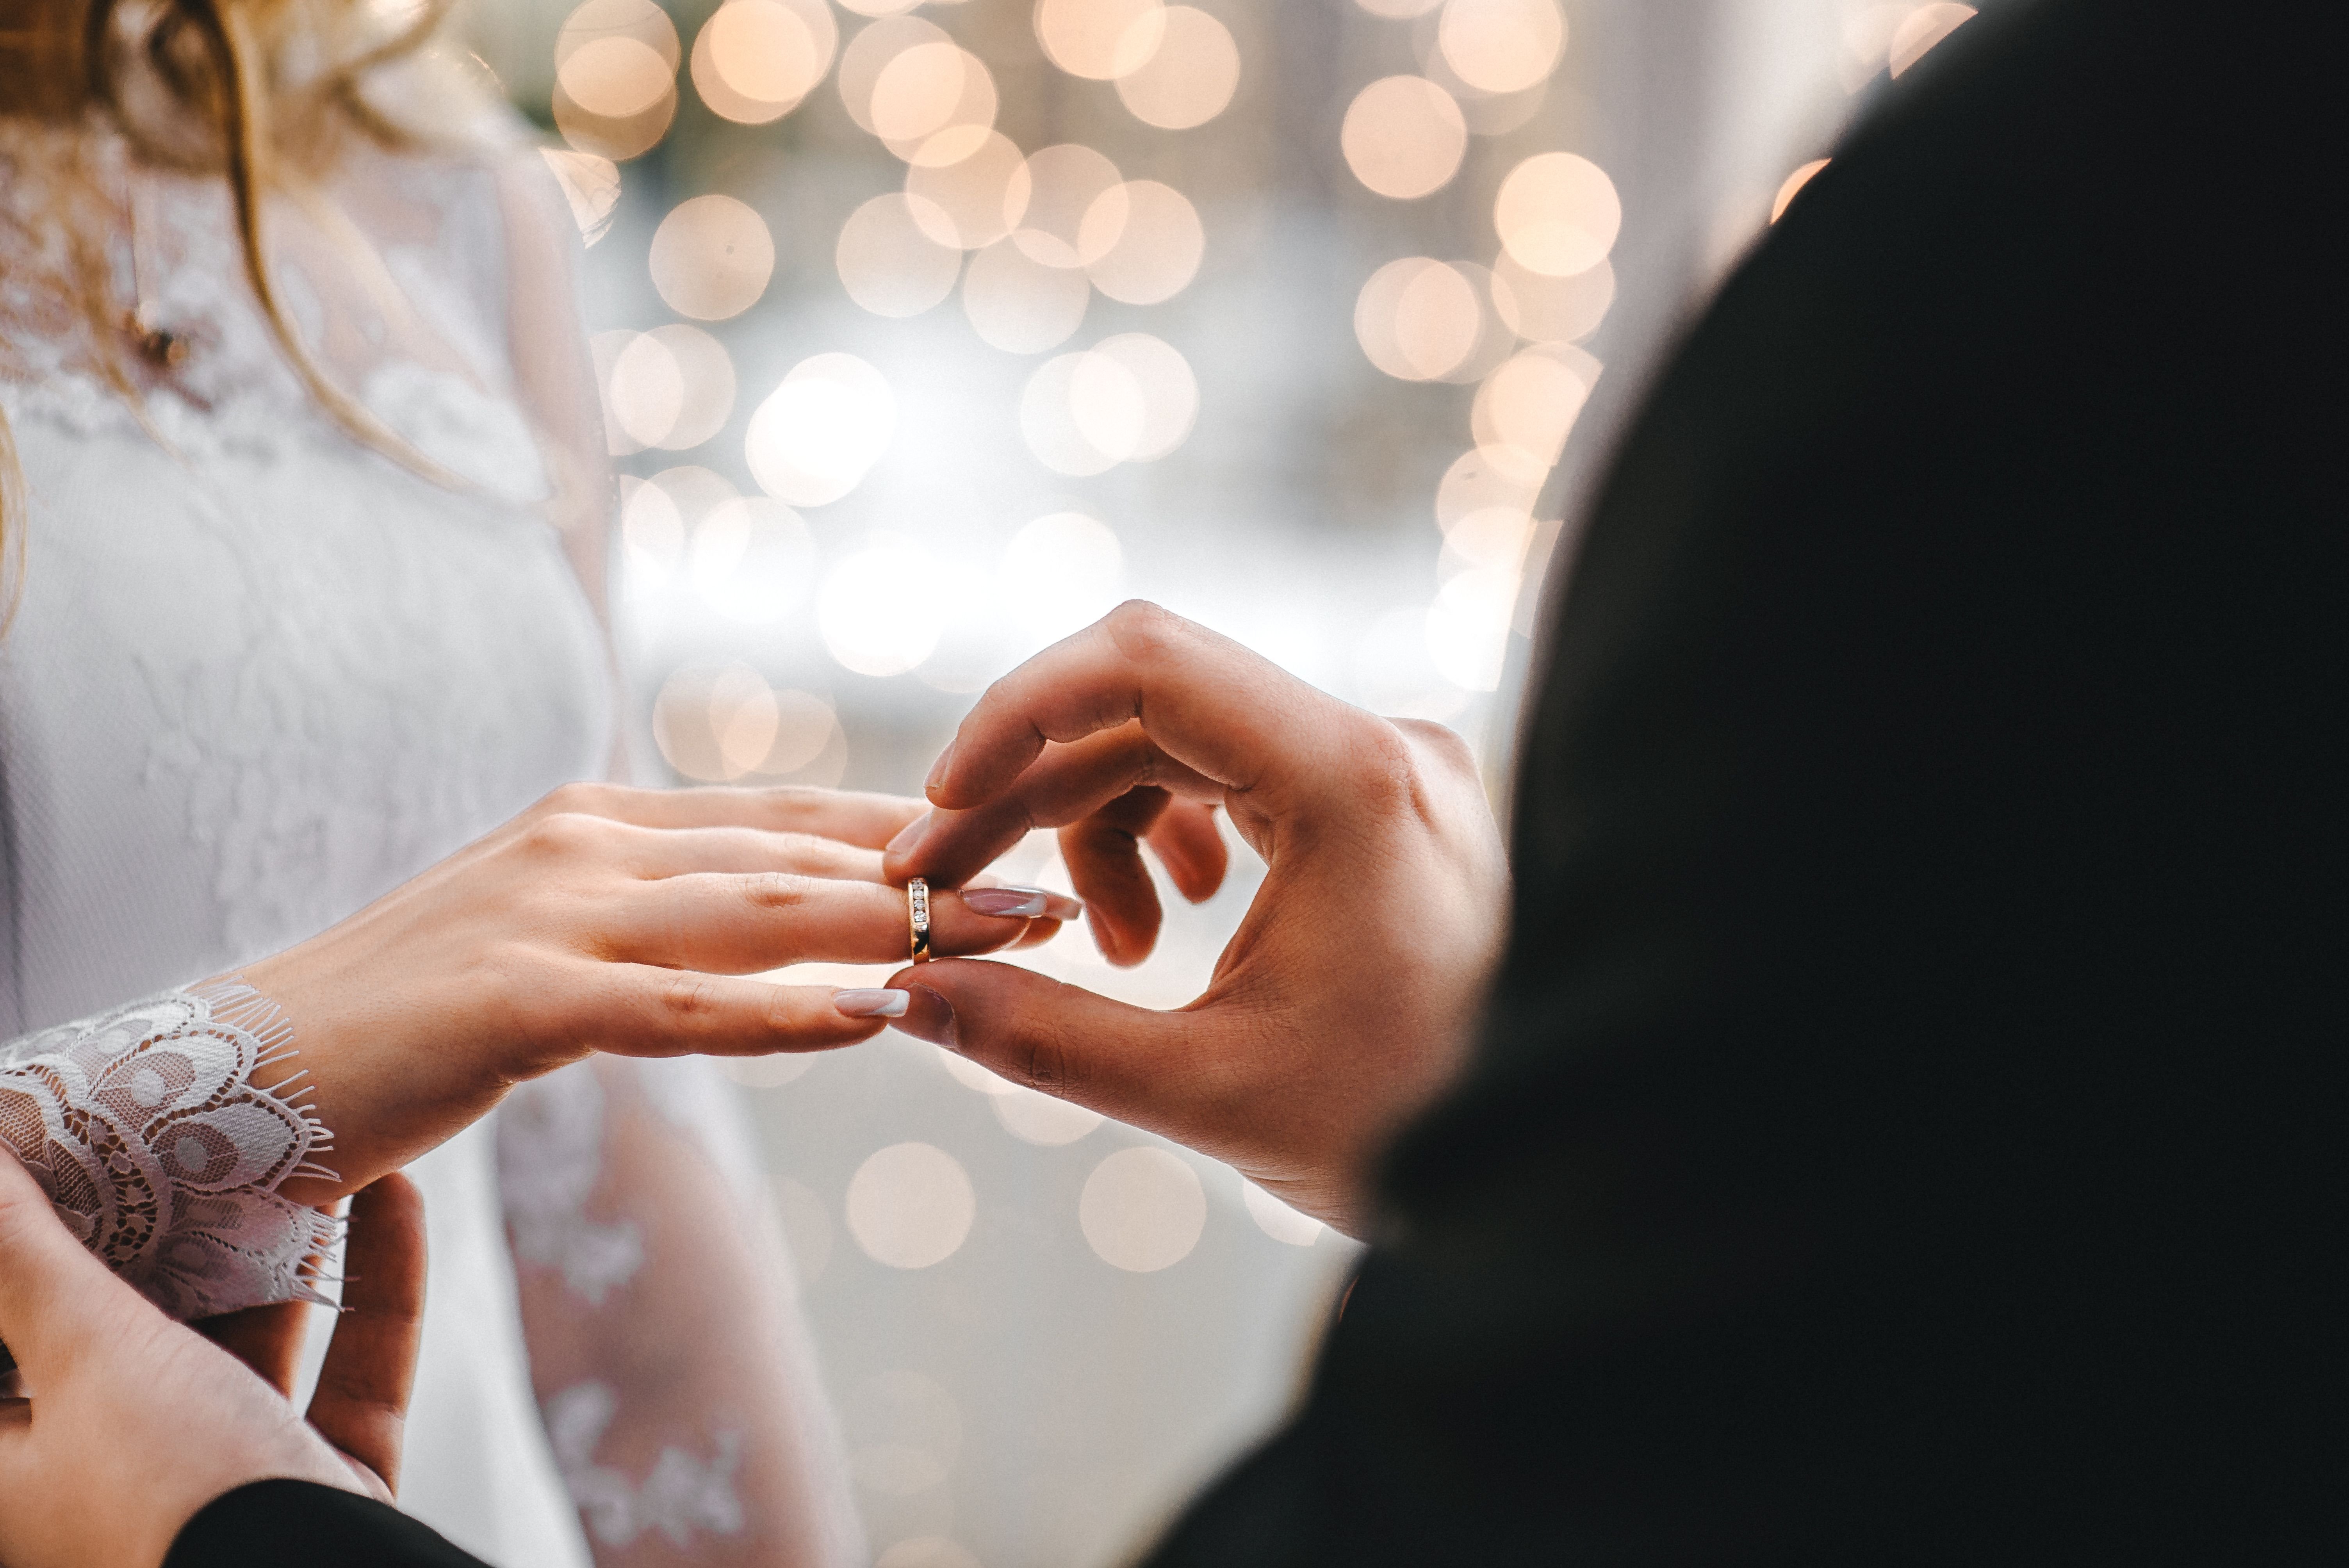 Ein Ehepaar tauscht Gelübde und Ringe aus | Quelle: Pexels